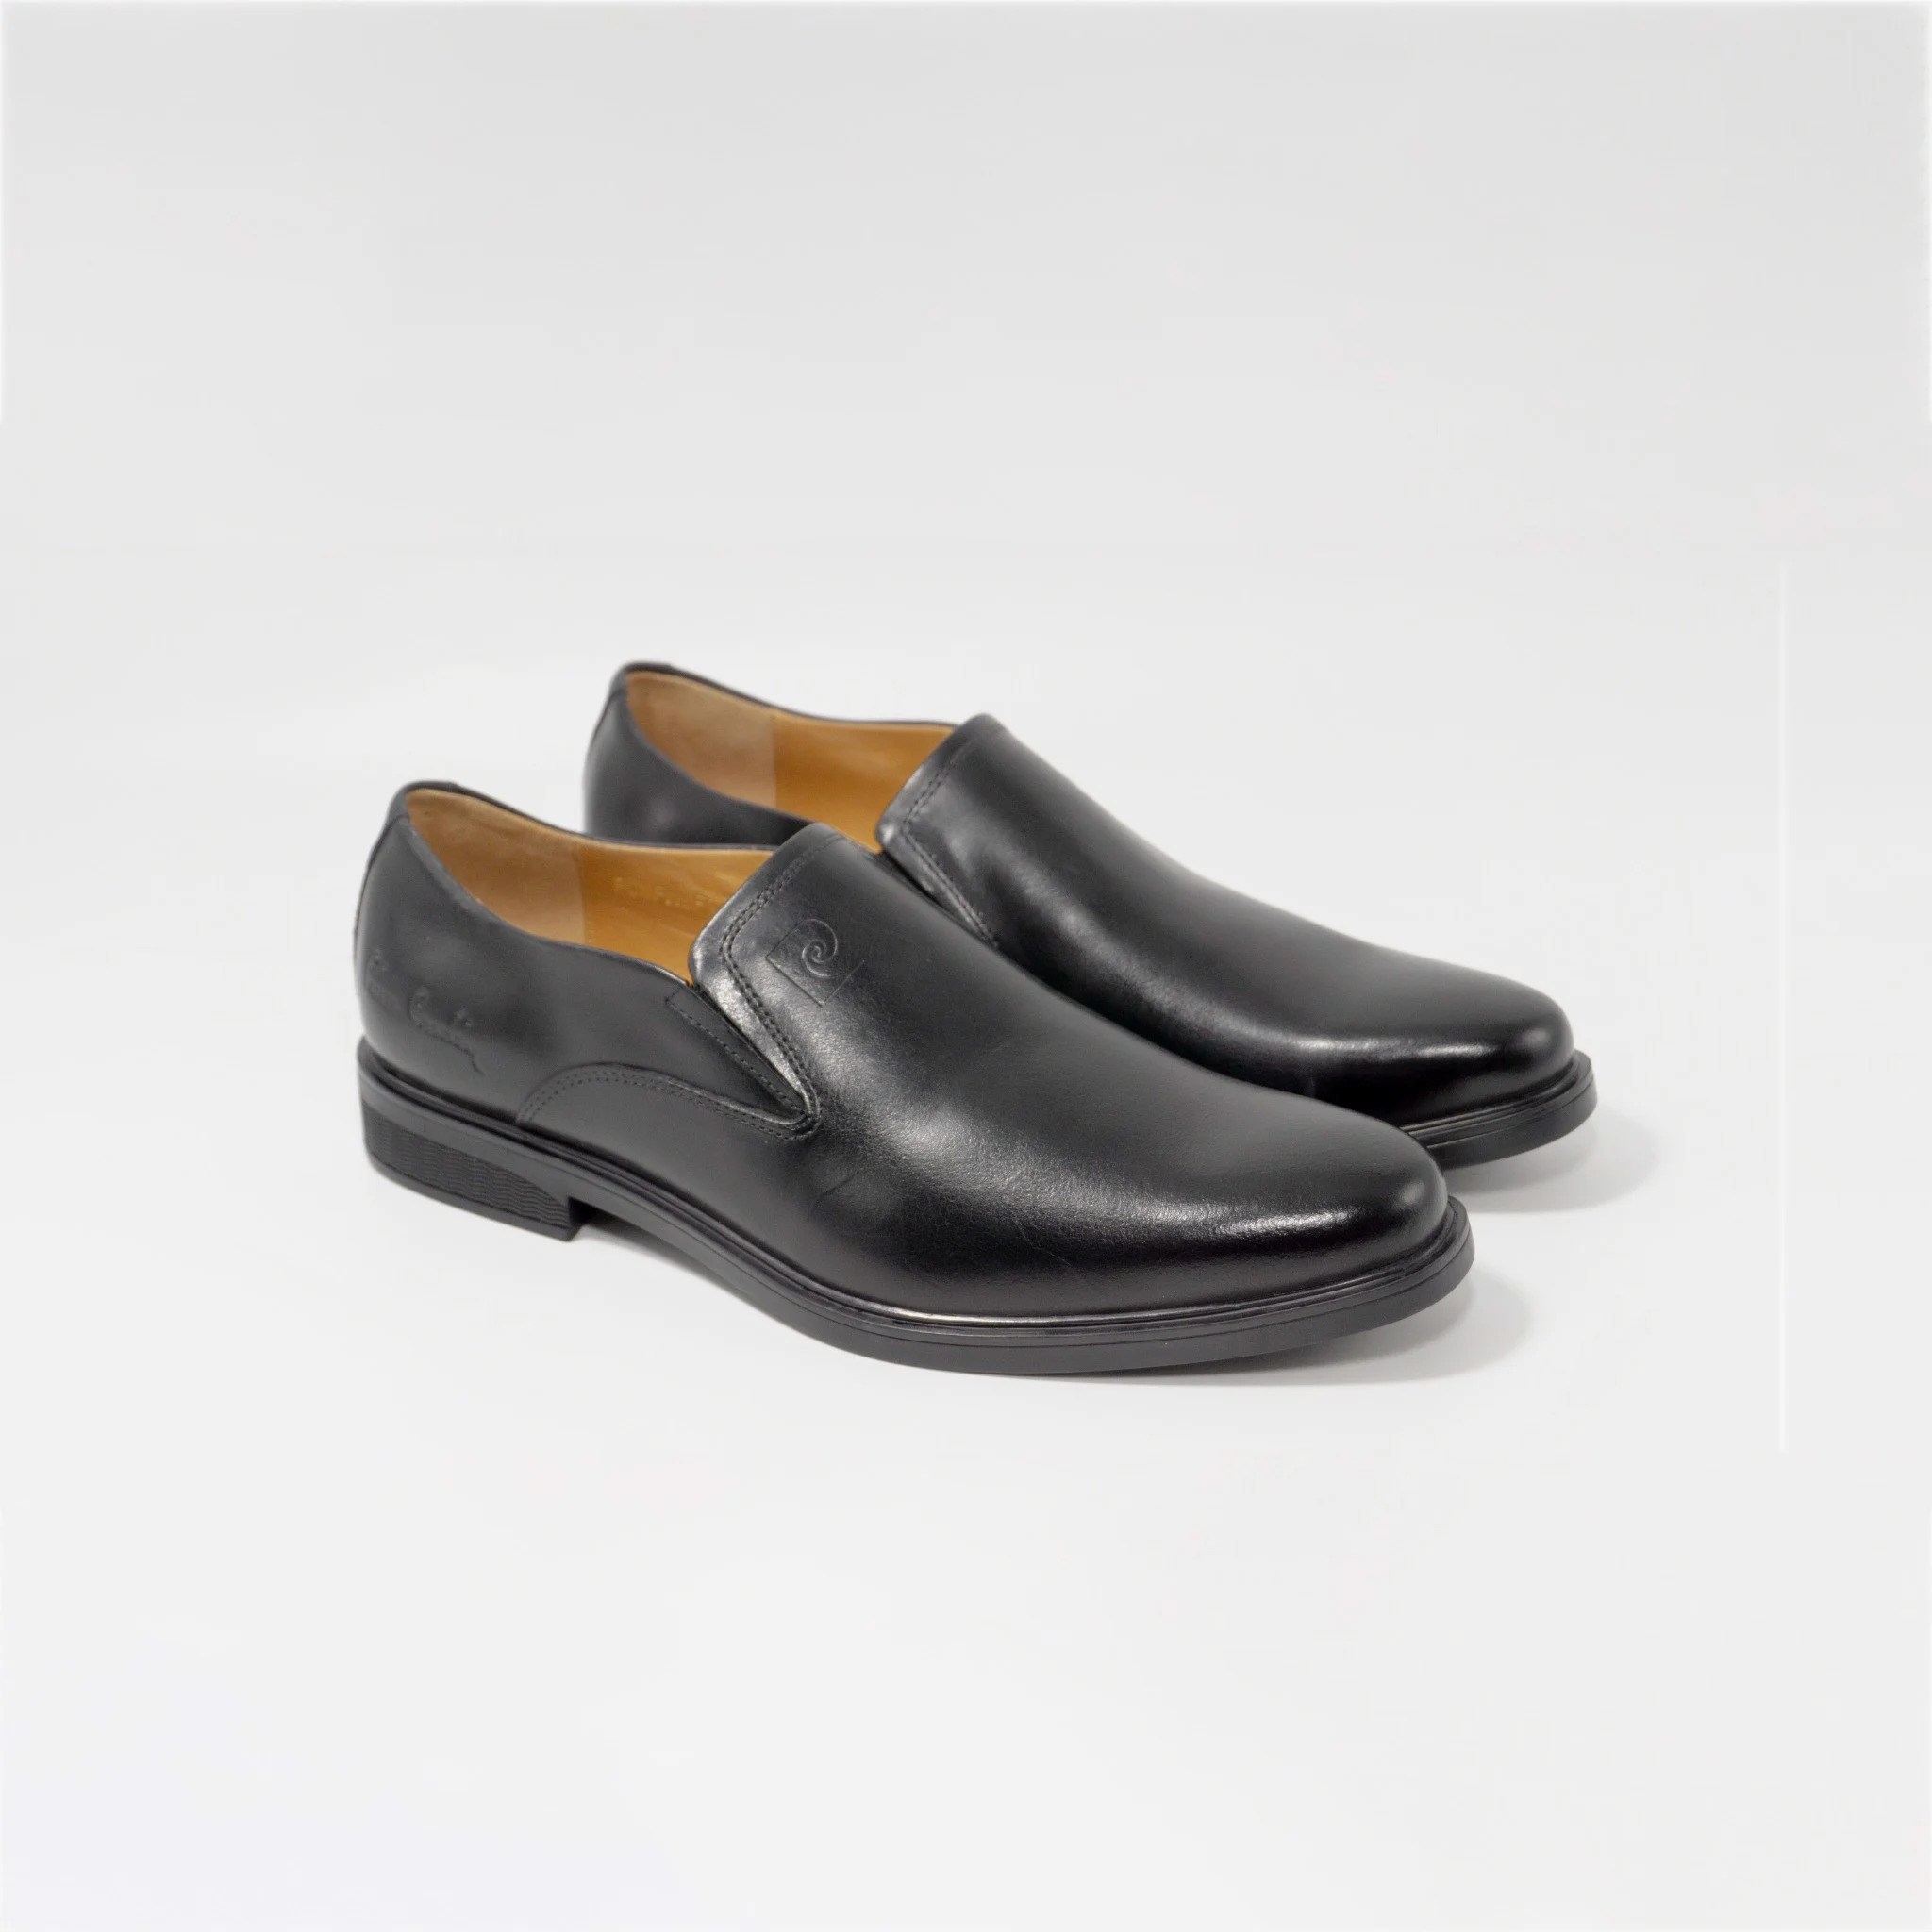 Giày lười da nam không dây Pierre Cardin PCMFWL 346, họa tiết da bóng, thiết kế đơn giản, phù hợp mọi nơi